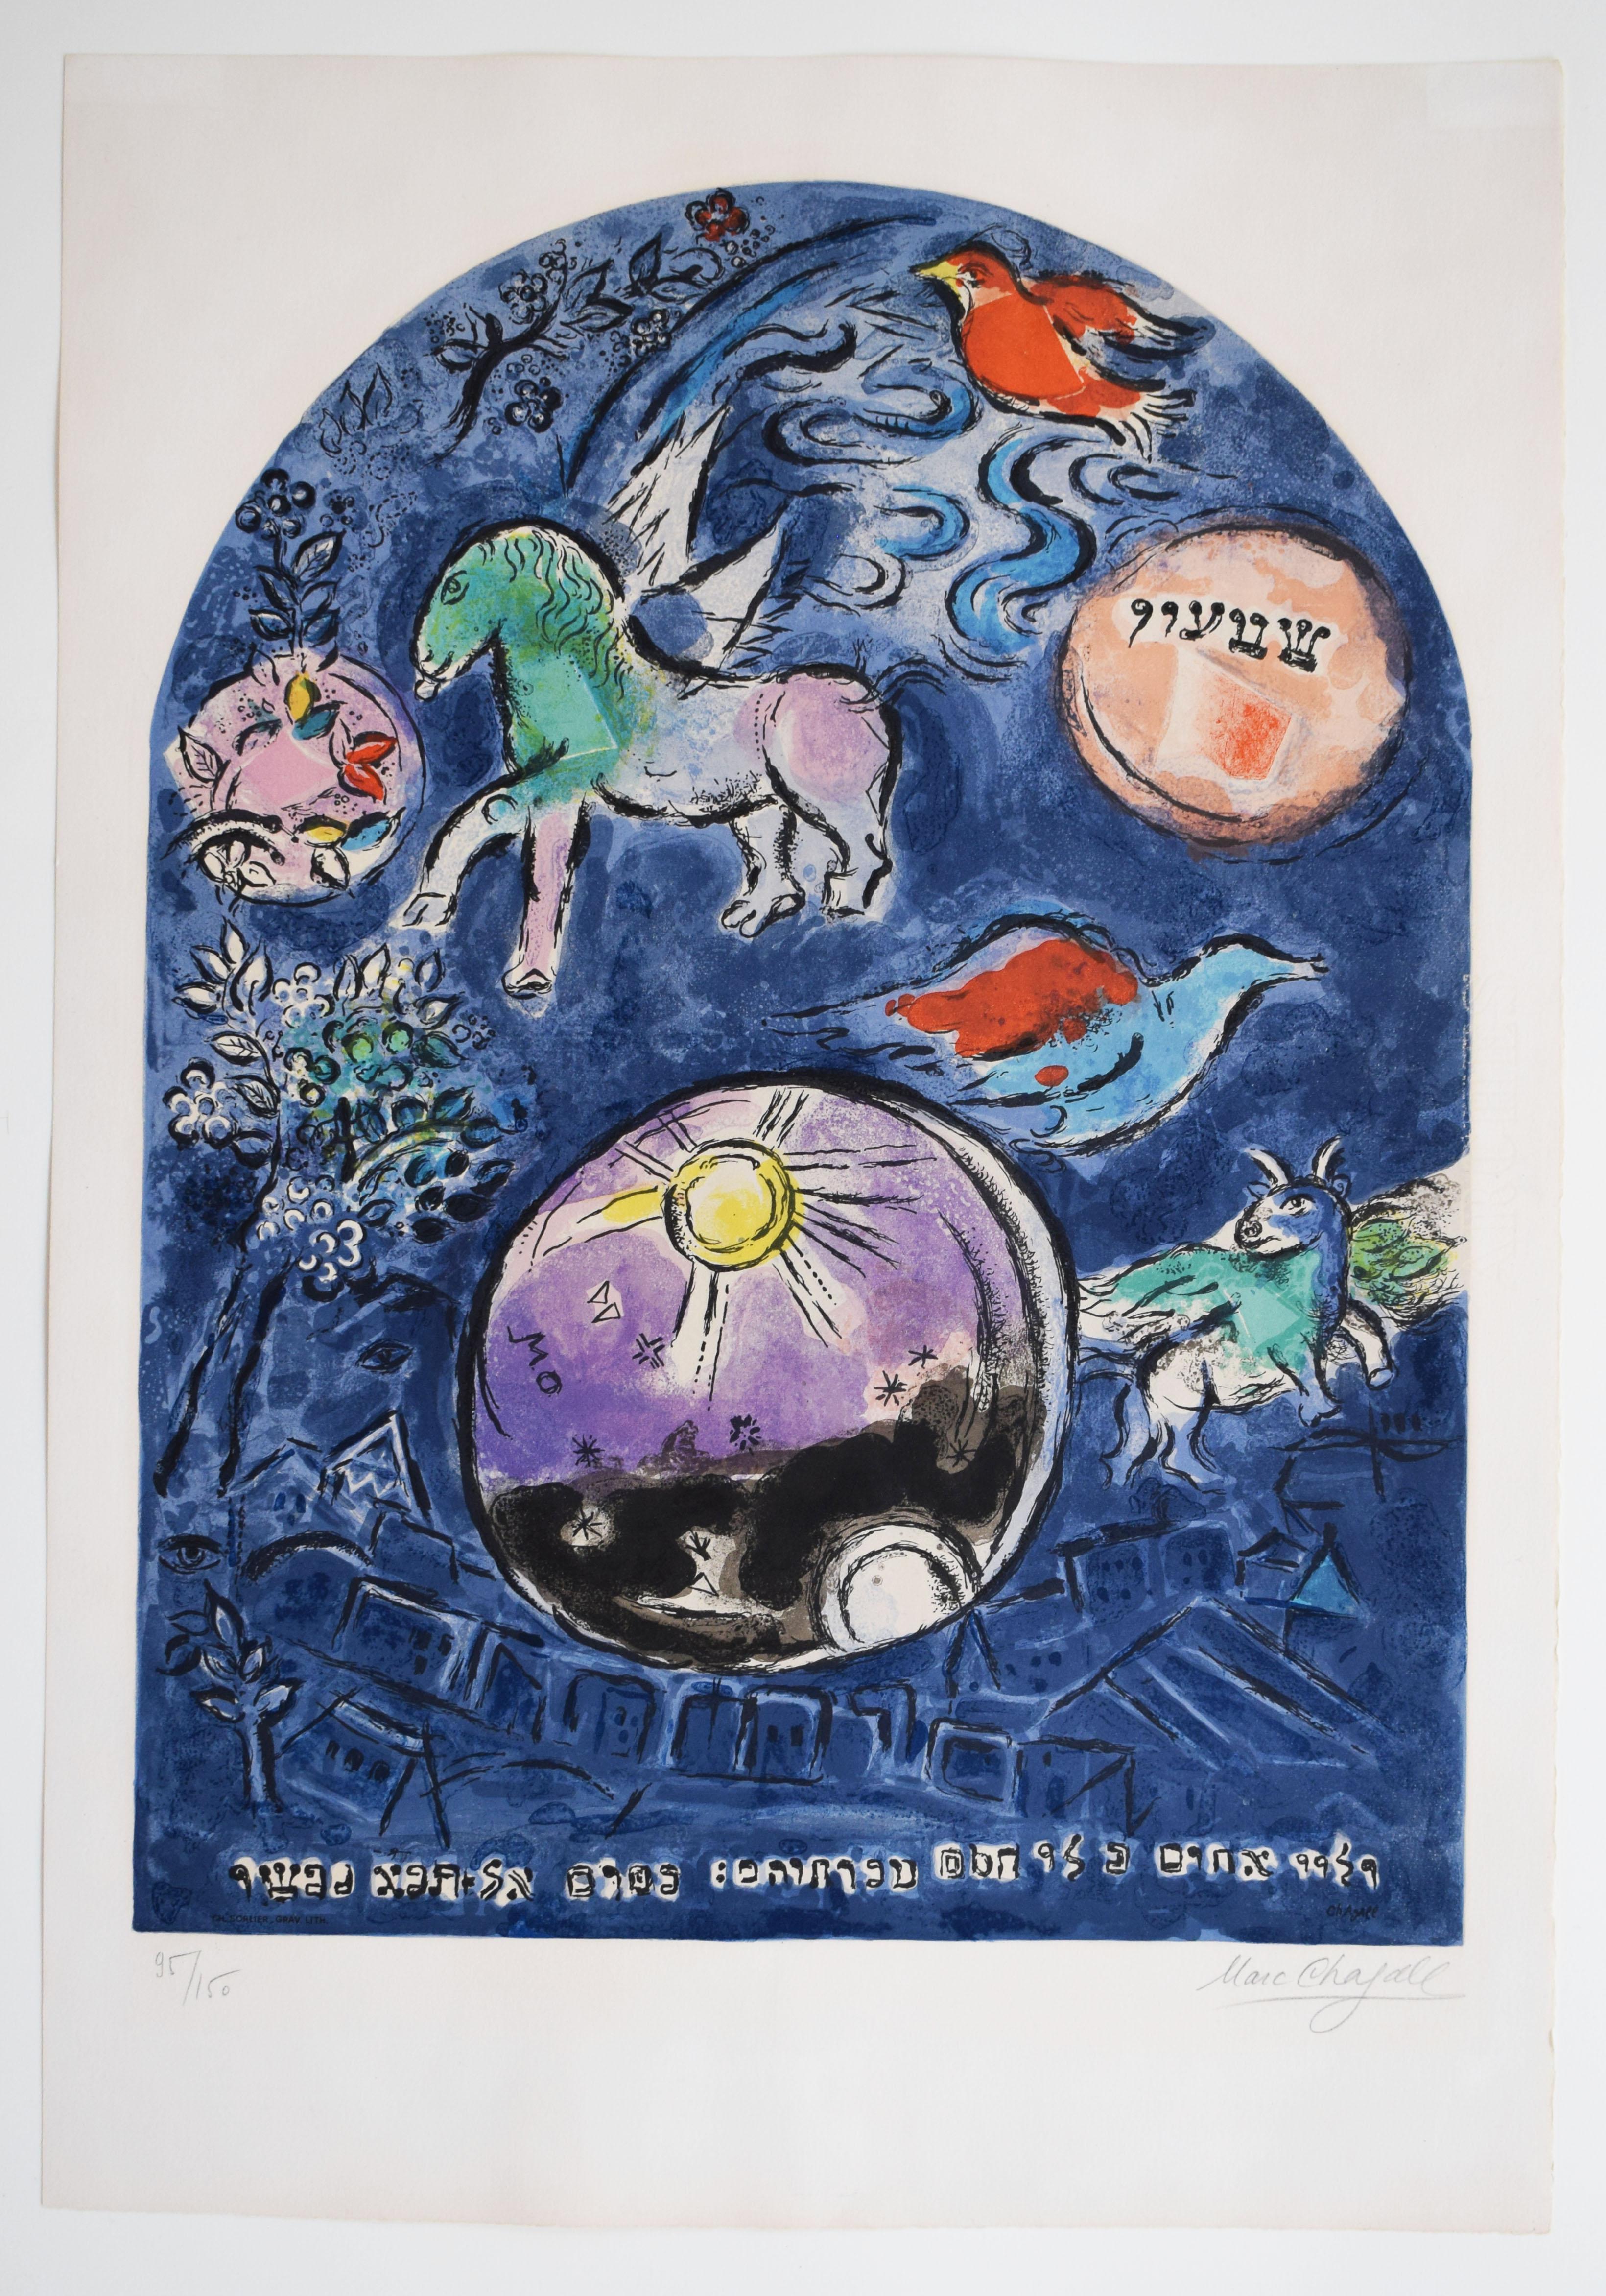 Tribe de Simeon, de : Douze Maquettes pour fenêtres de vitrail de Jérusalem - Print de (after) Marc Chagall